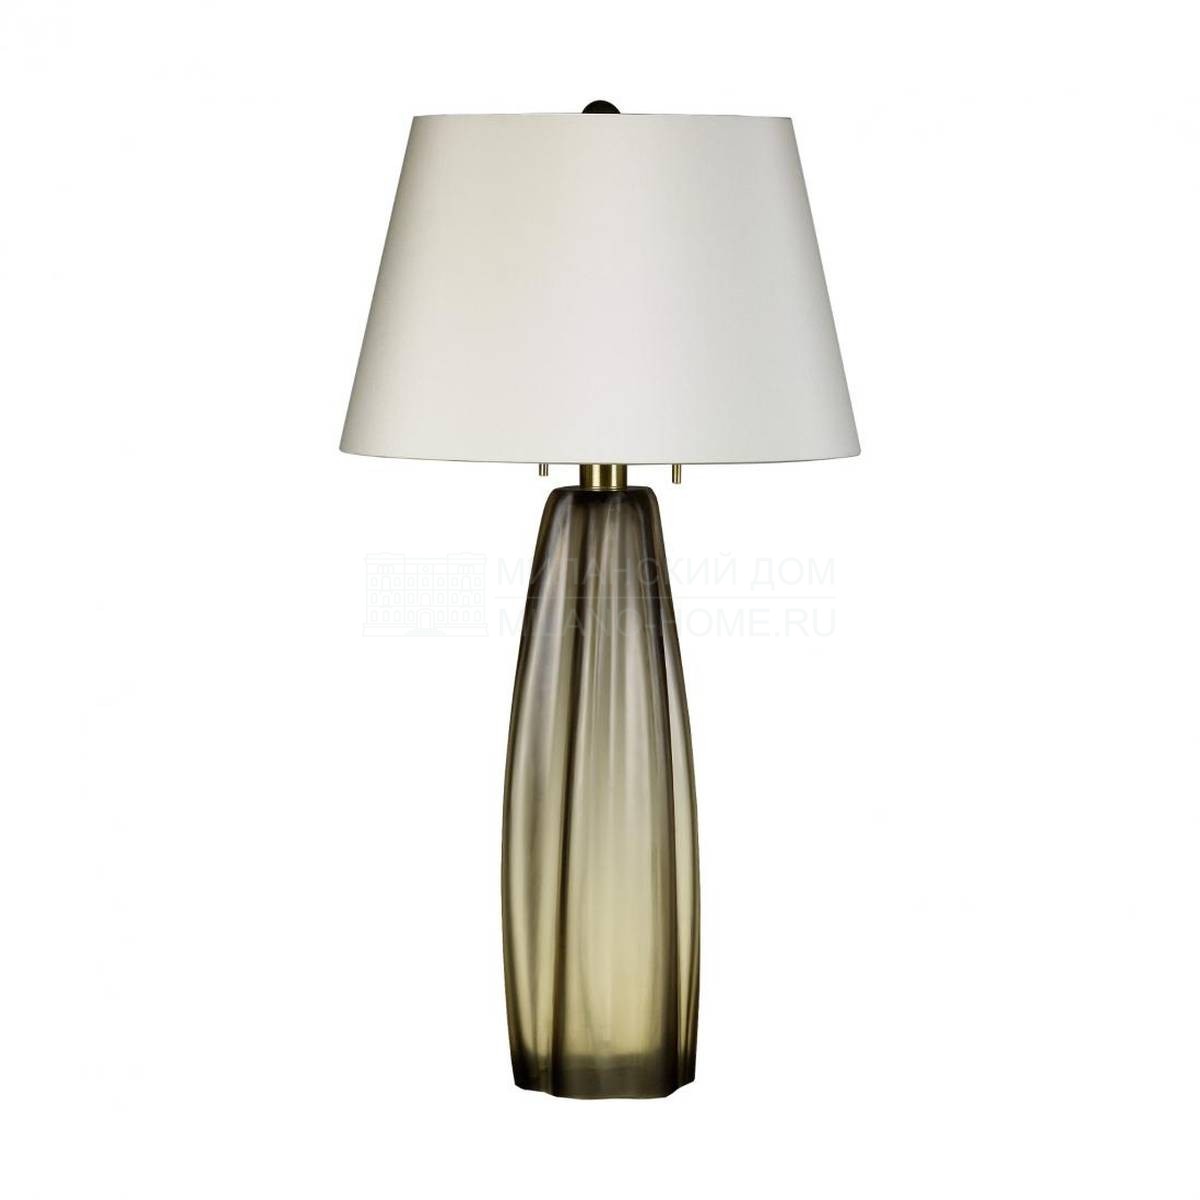 Настольная лампа Margot из Италии фабрики RUBELLI Casa